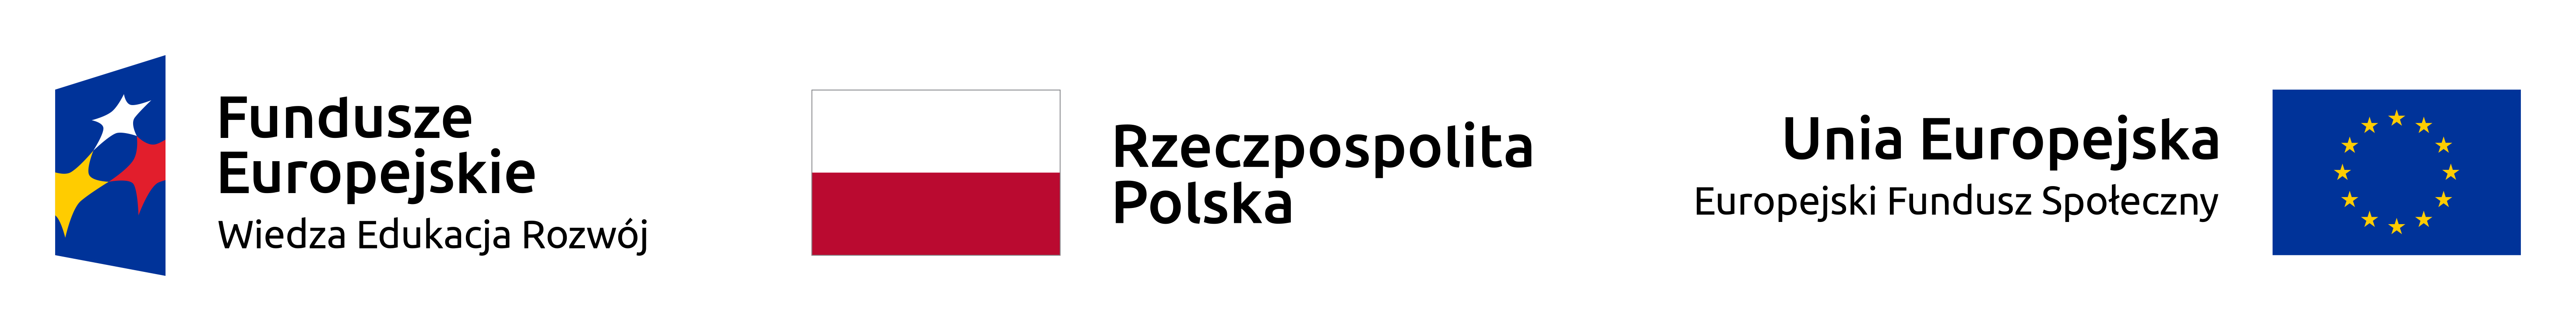 Logotypy programu.